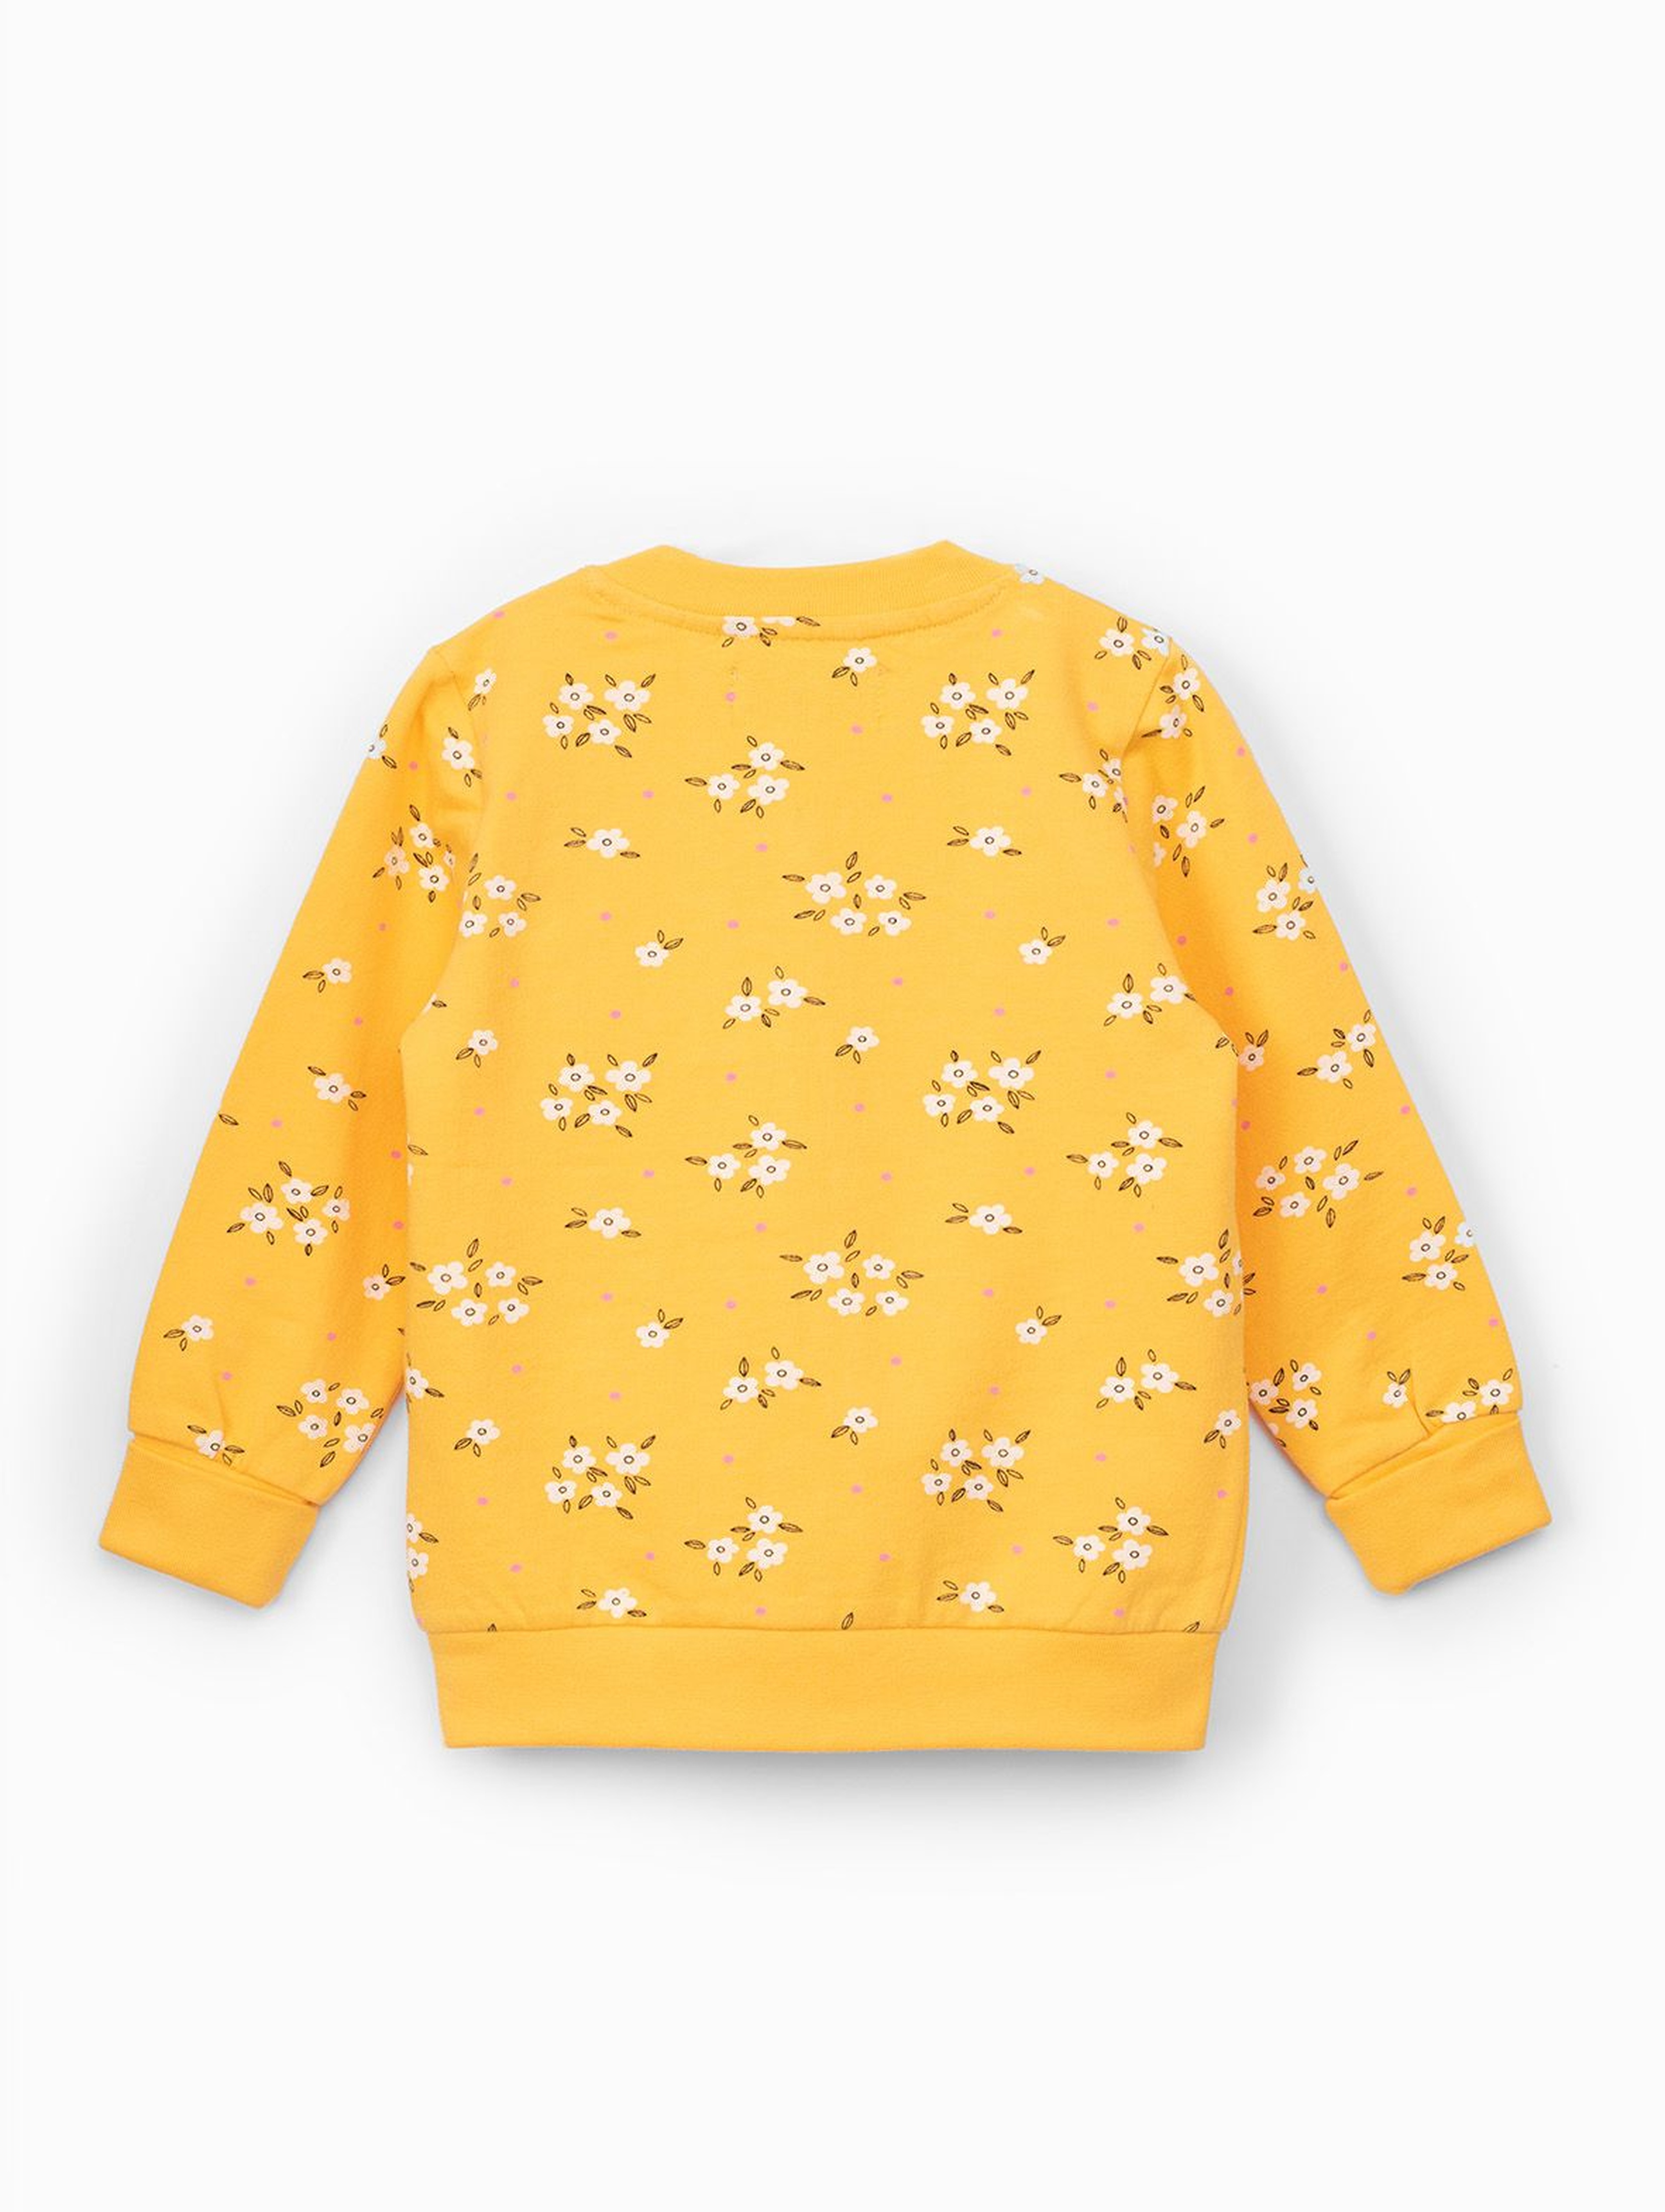 Bluza dresowa dziewczęca żółta w kwiatki